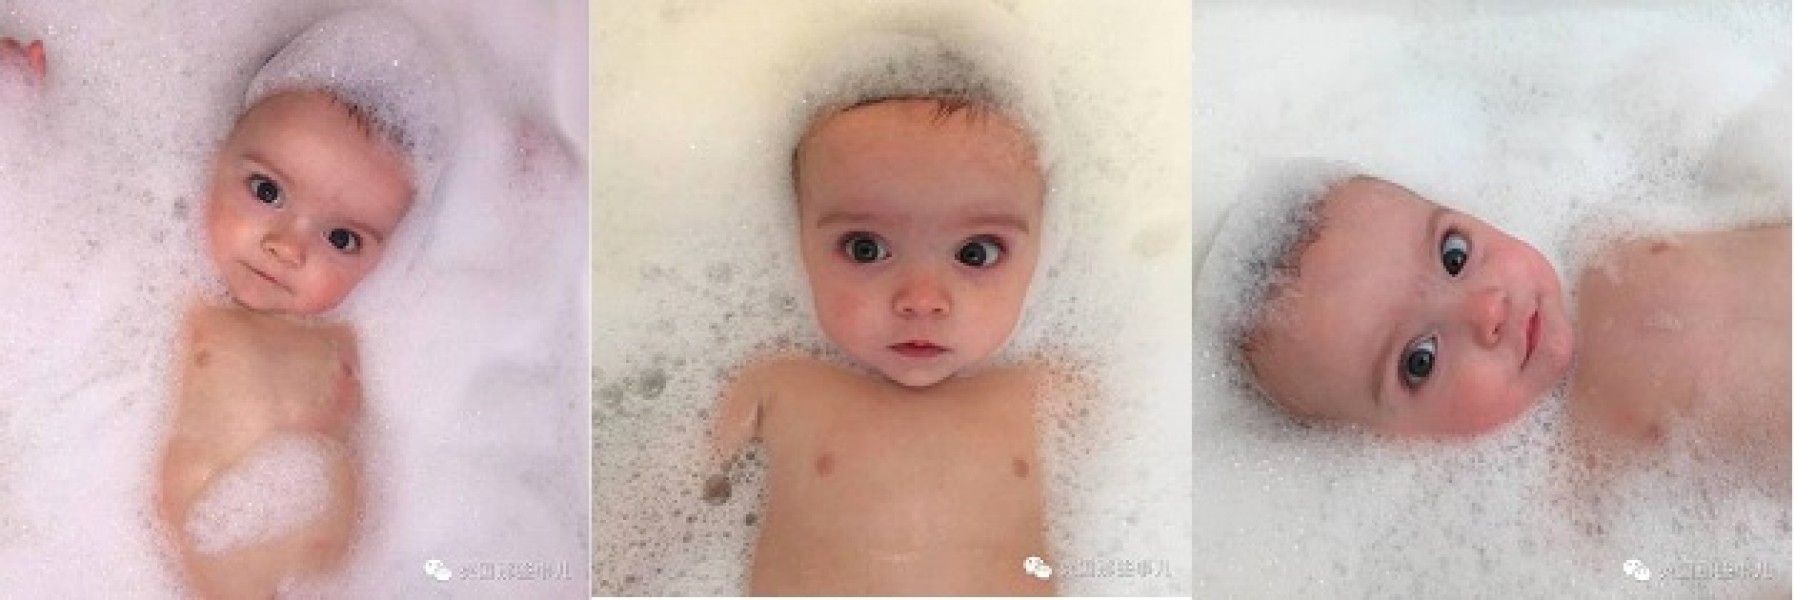 Ba bé lúc tắm trông giống hệt nhau.